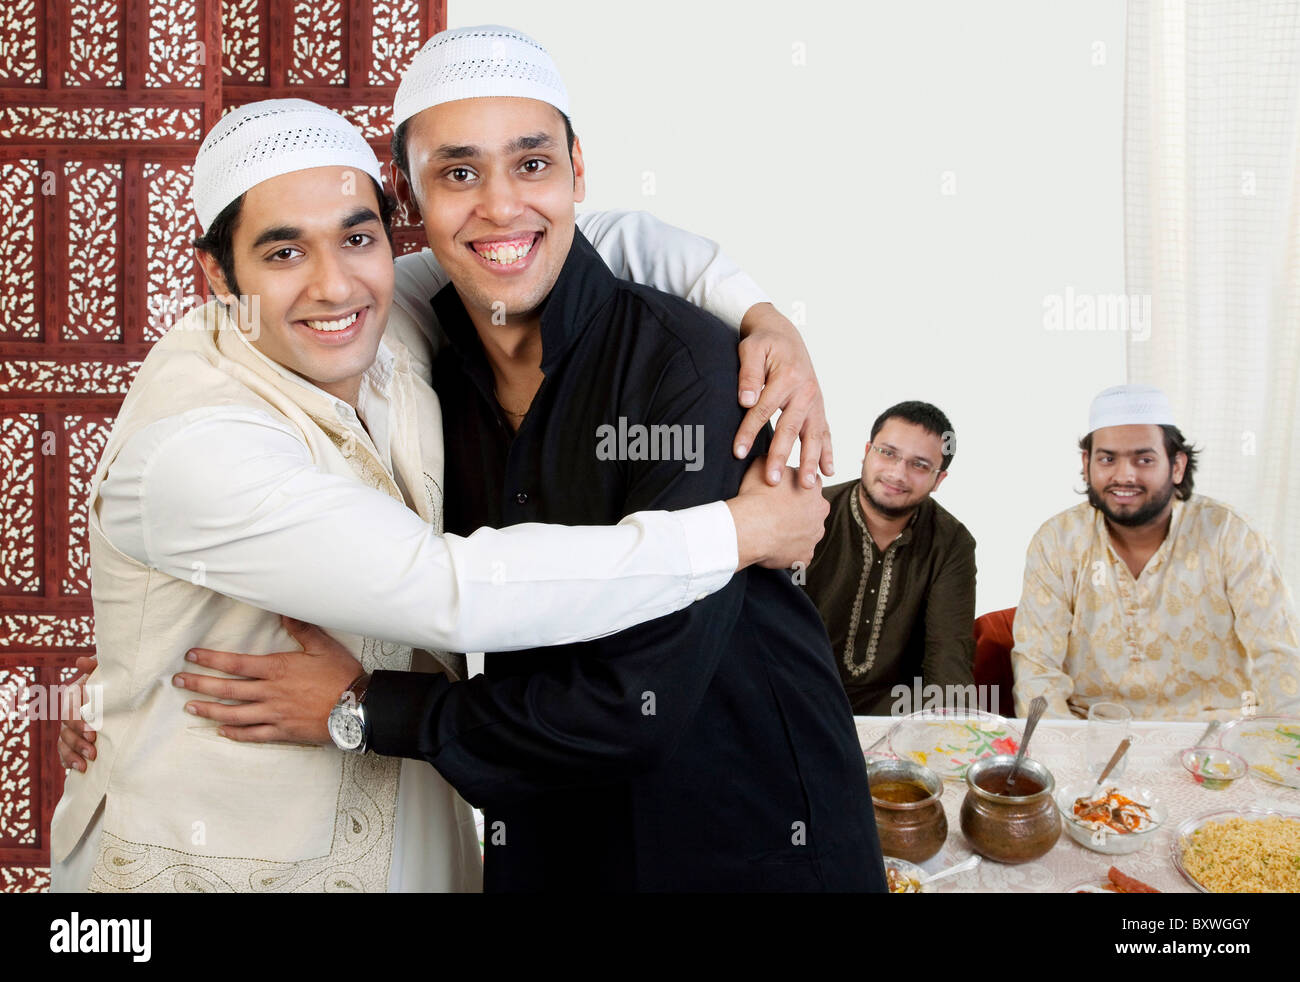 muslim-men-hugging-each-other-BXWGGY.jpg